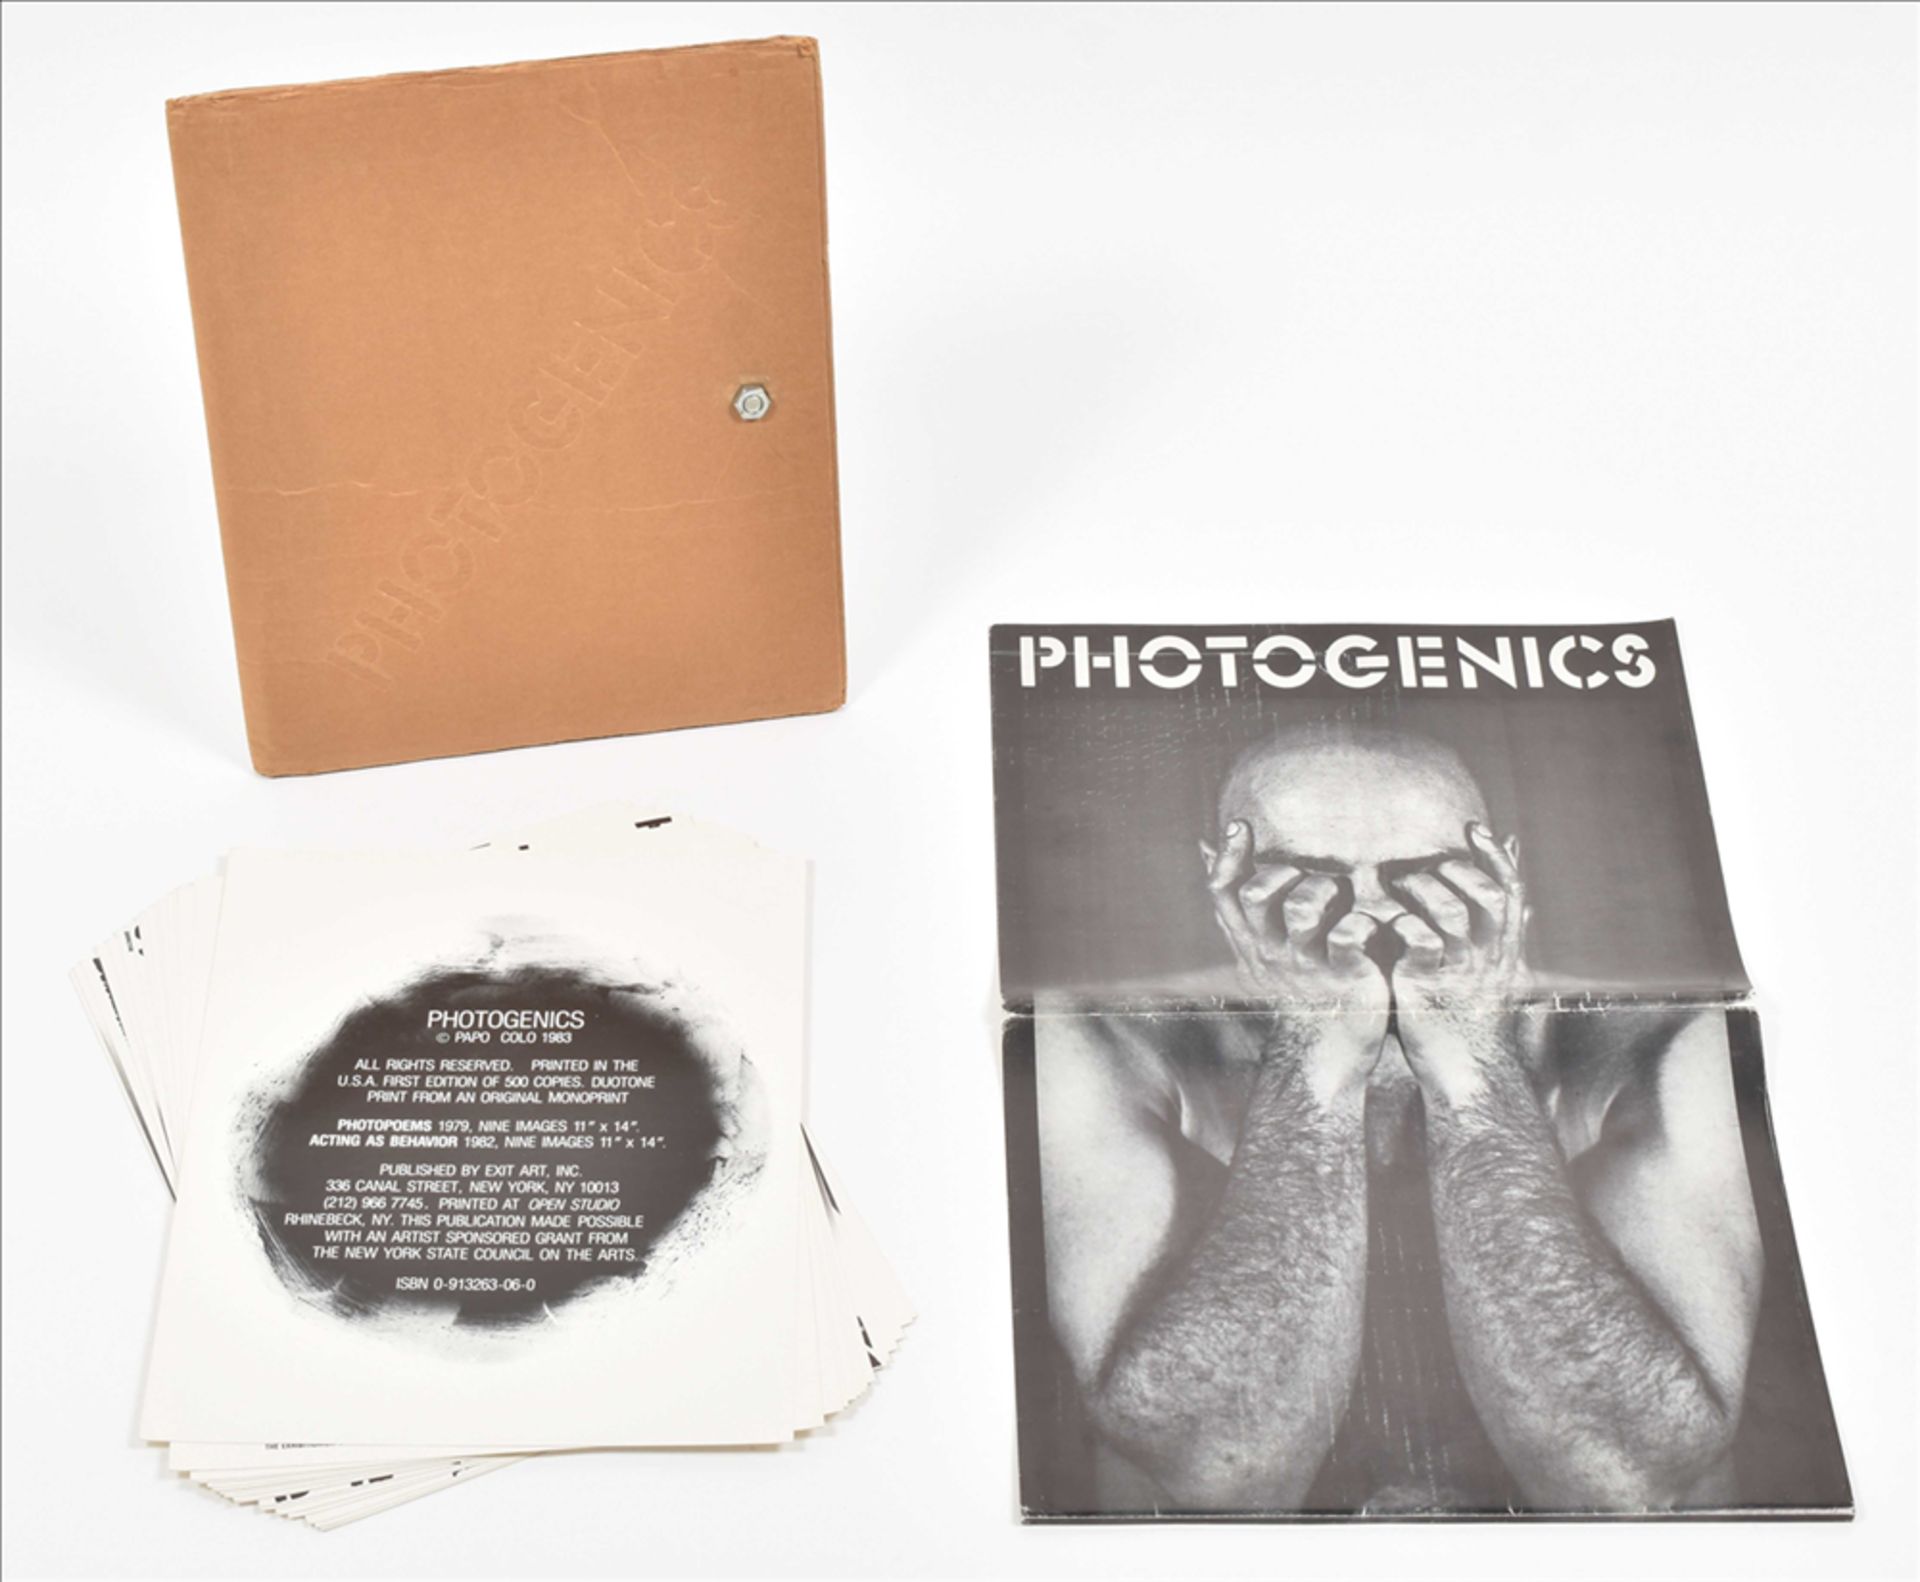 Papo Colo, Photogenics Photopoems 1983